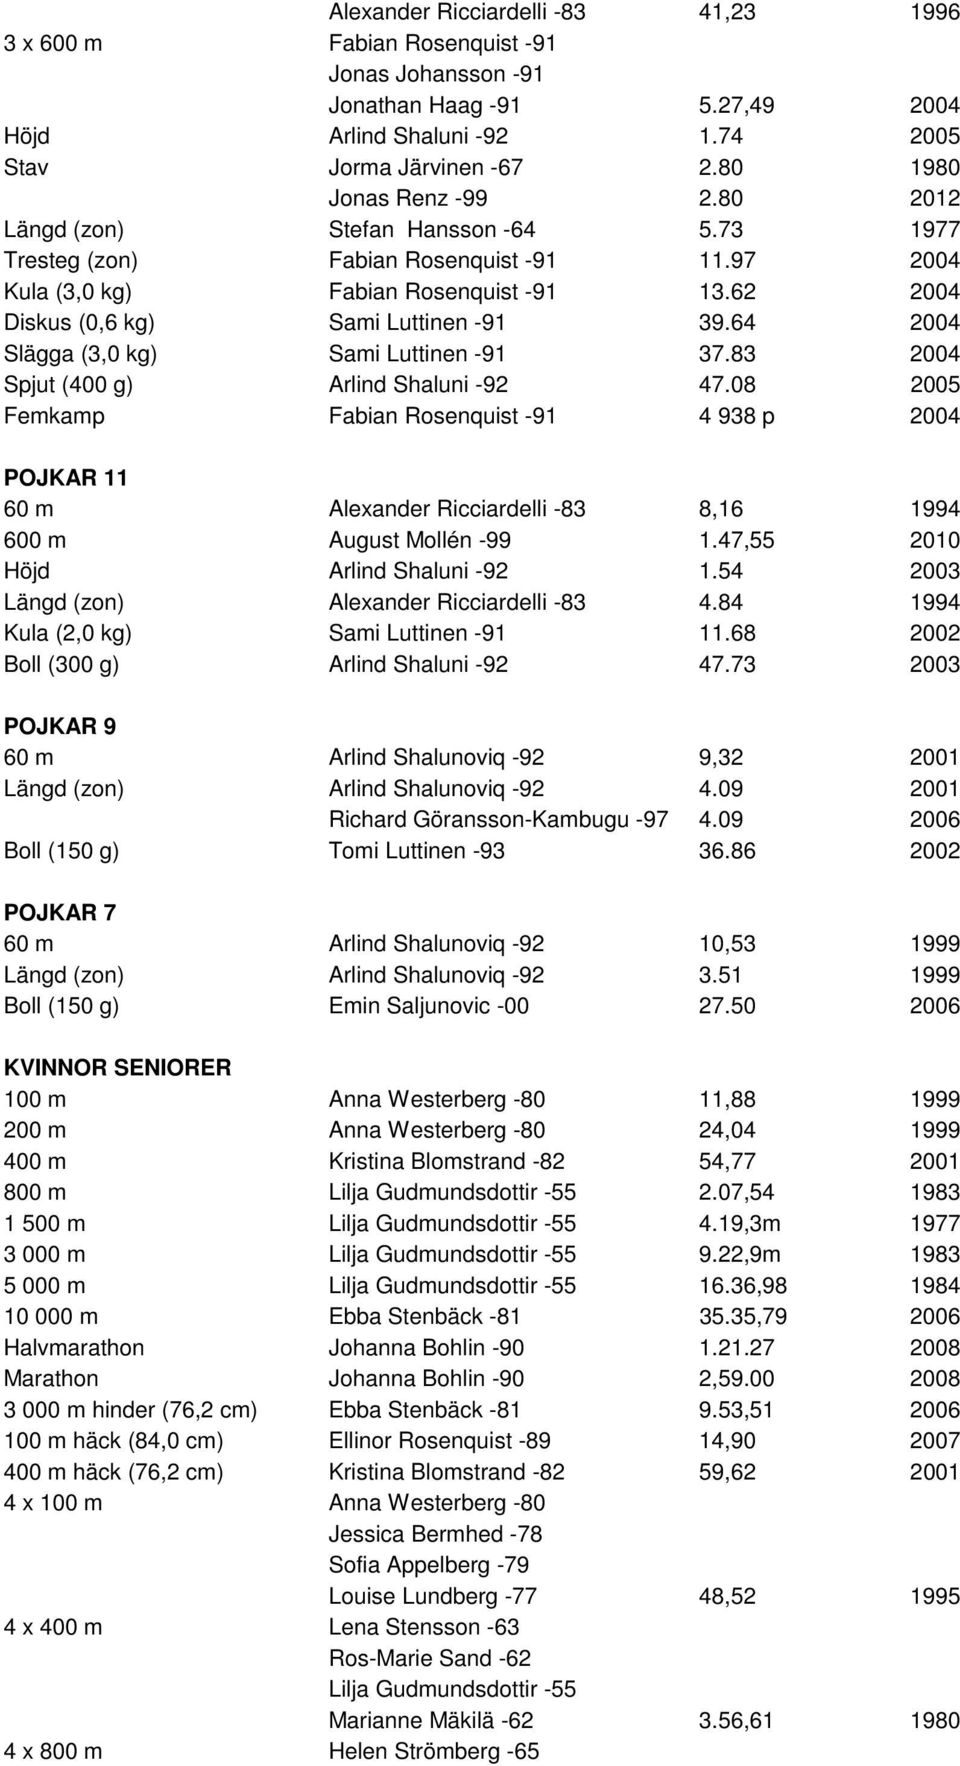 62 2004 Diskus (0,6 kg) Sami Luttinen -91 39.64 2004 Slägga (3,0 kg) Sami Luttinen -91 37.83 2004 Spjut (400 g) Arlind Shaluni -92 47.